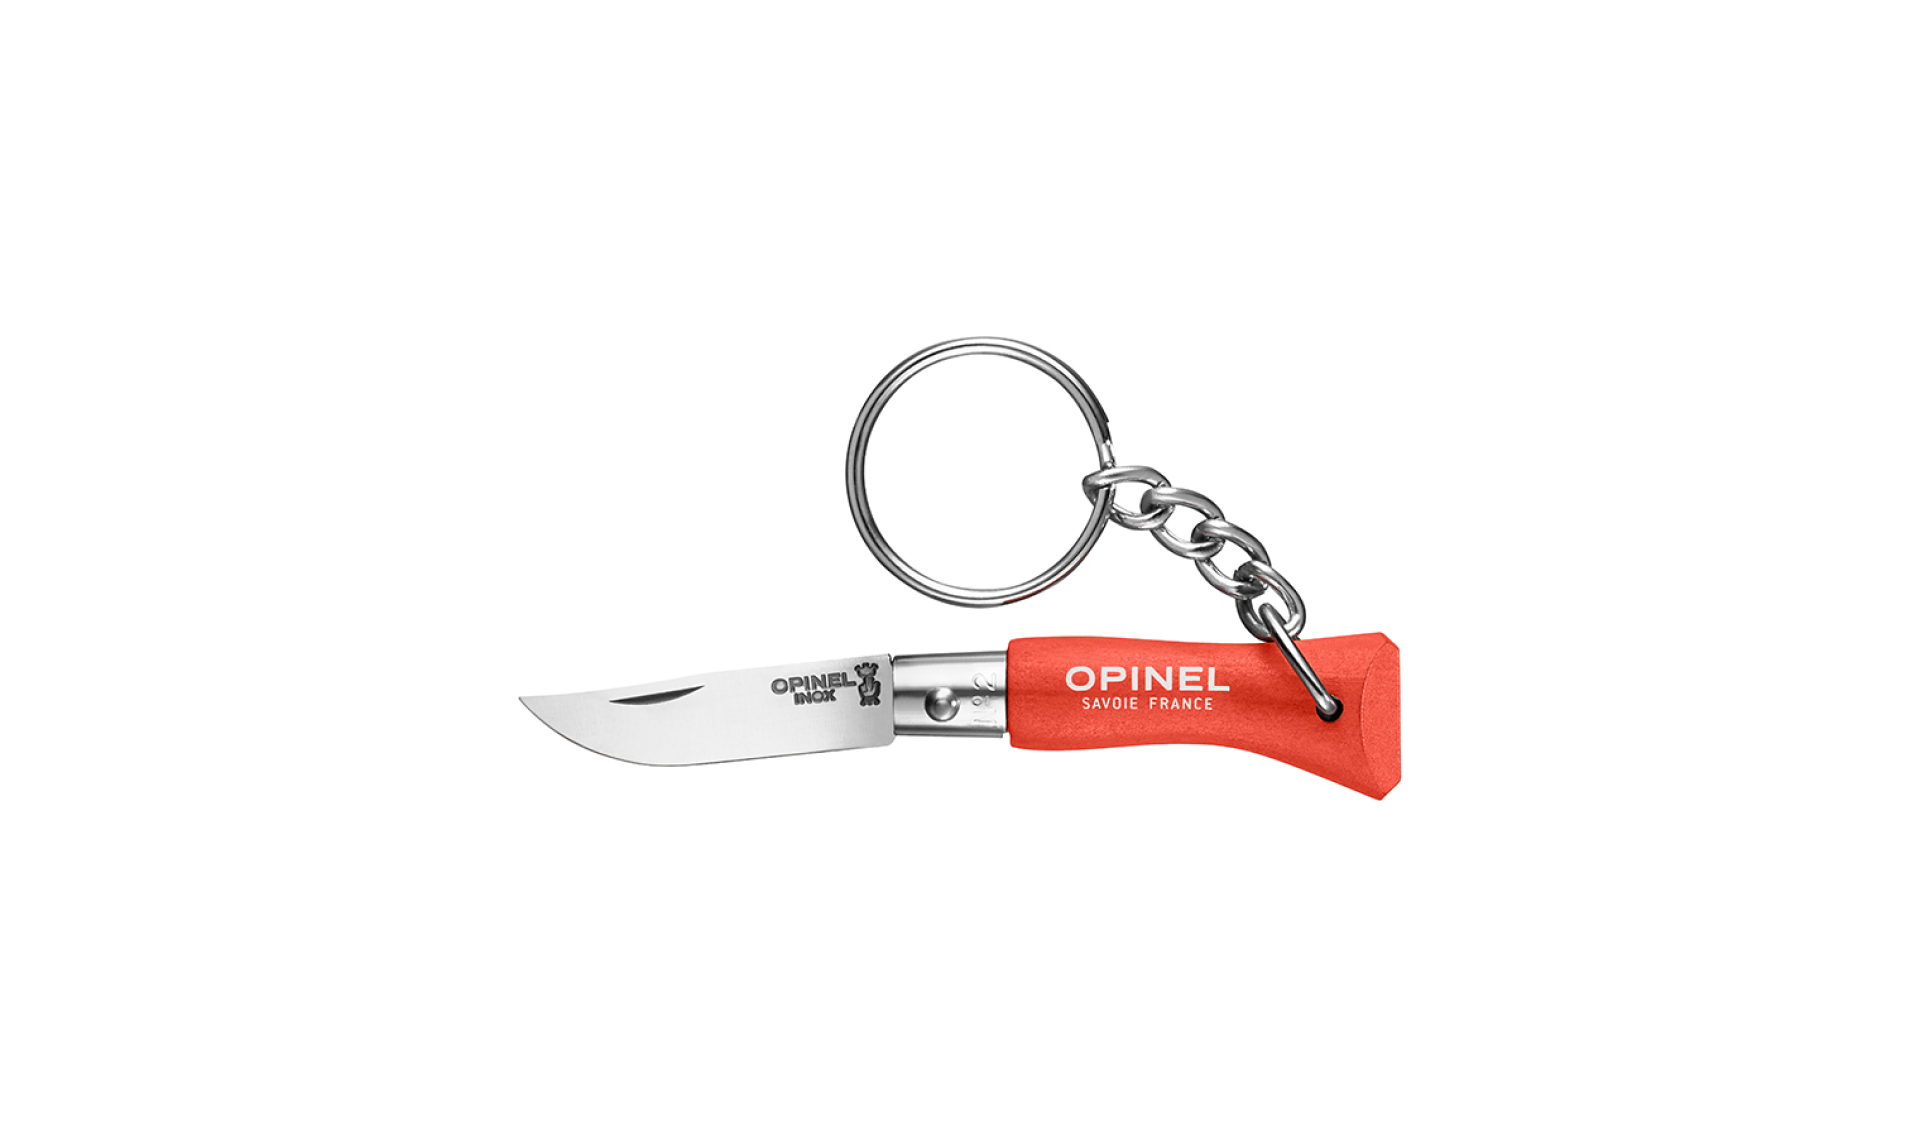 porte-clés mini couteau OPINEL